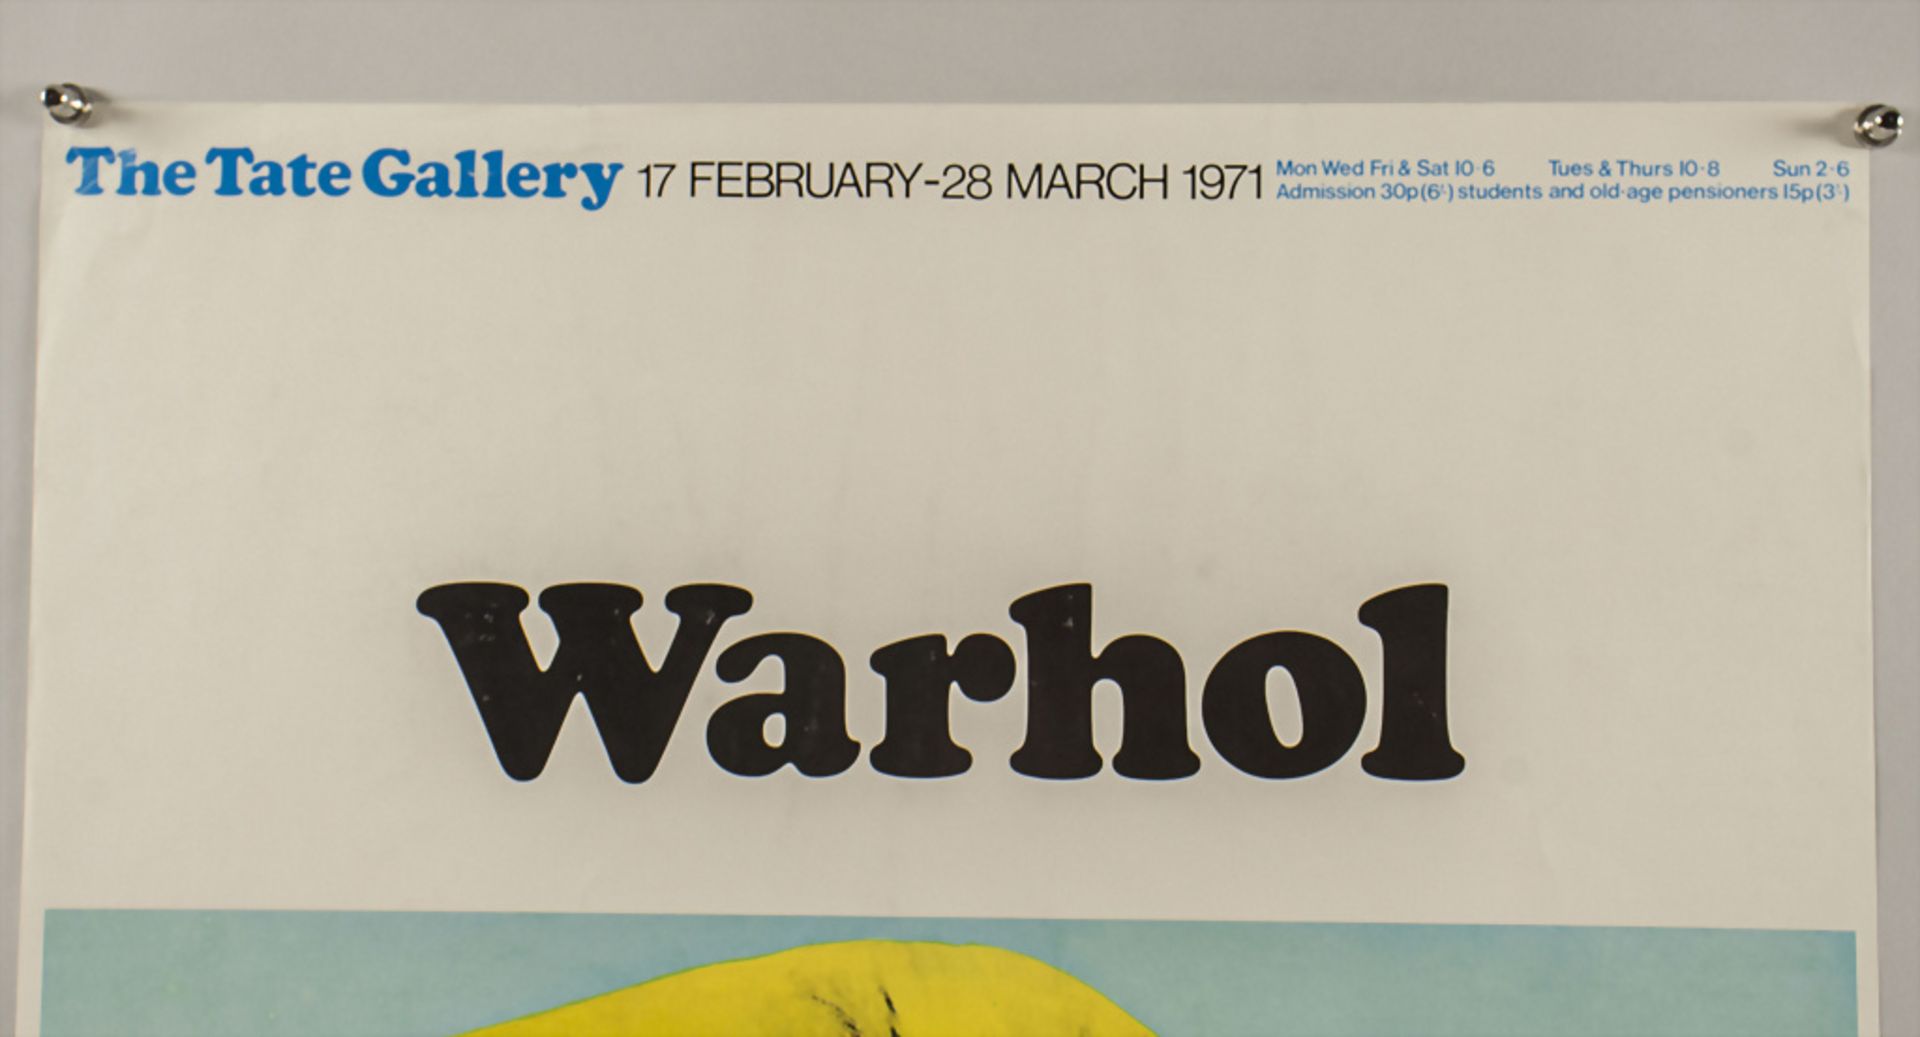 The Tate Gallery London - Warhol, Ausstellungsplakat 1971 - Bild 3 aus 6